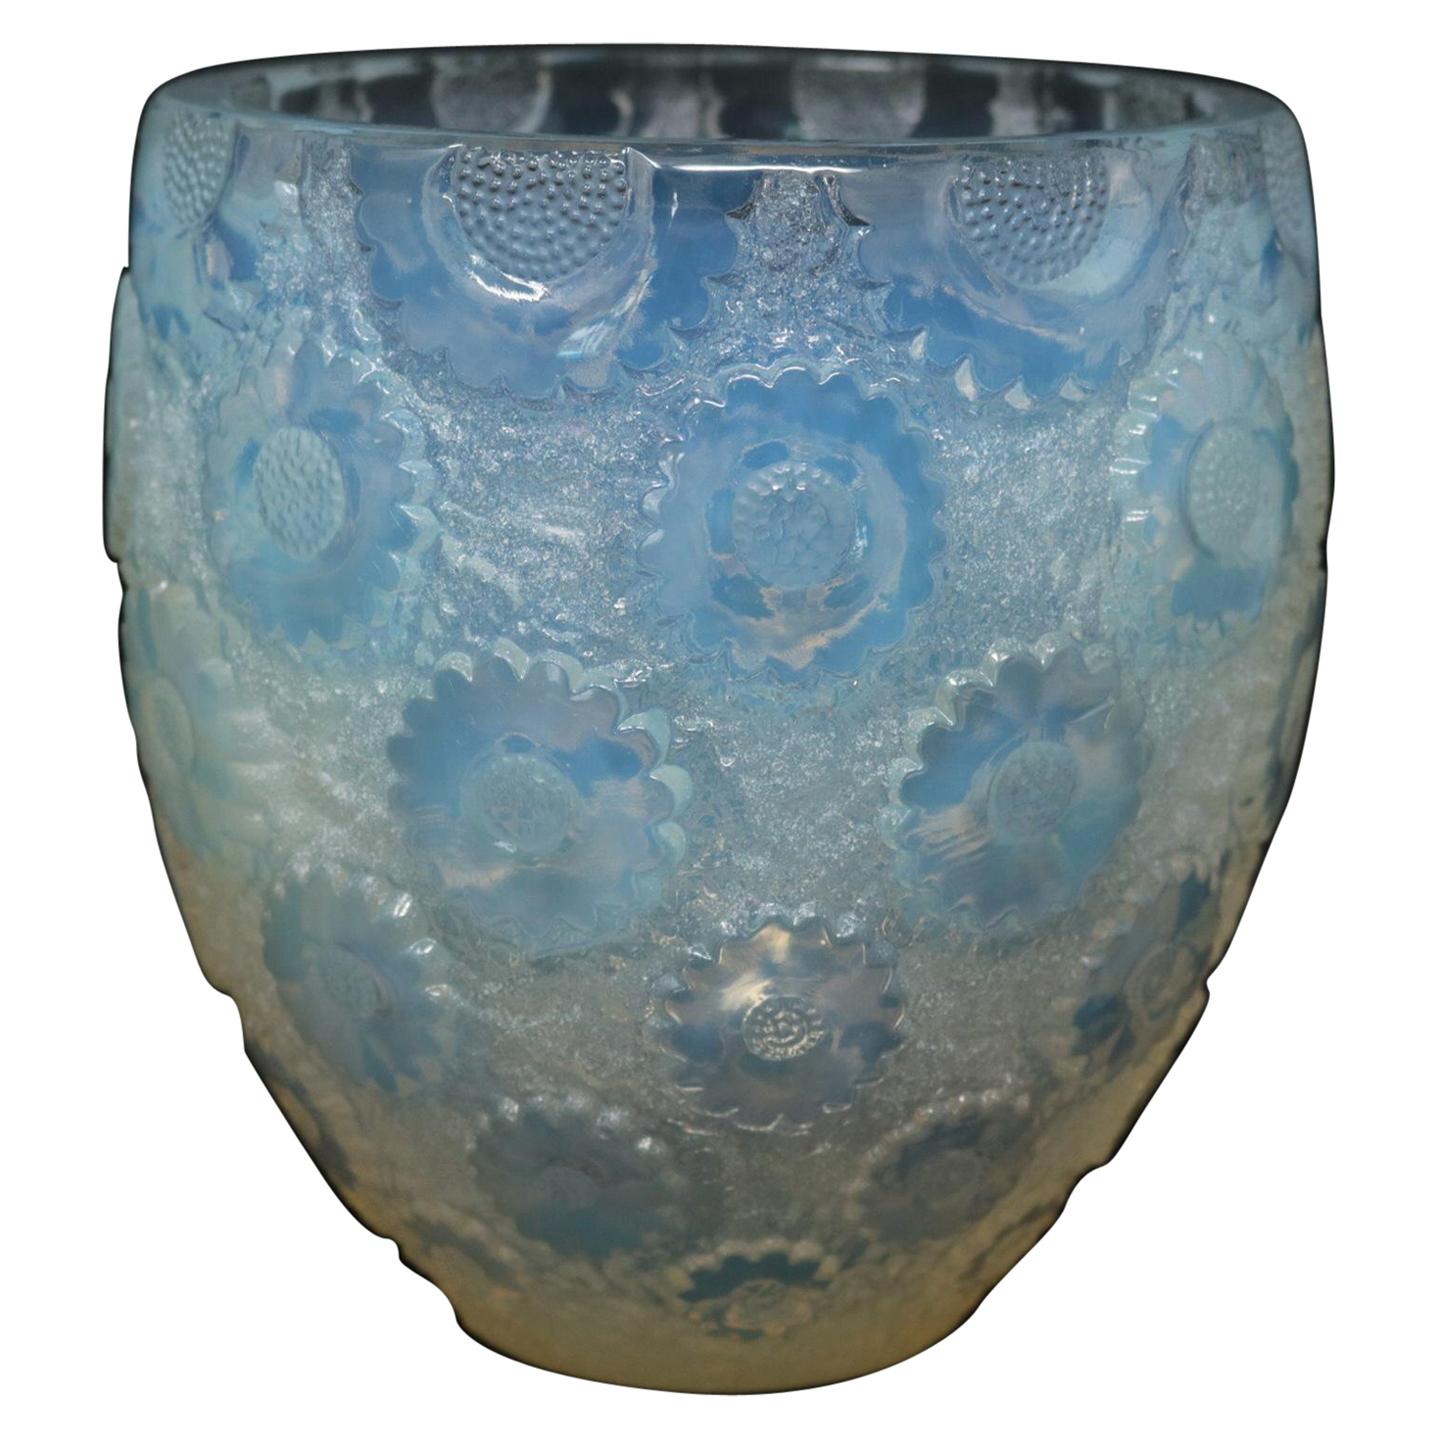 Vase „Paquerettes“ von Lalique aus opalisierendem Glas mit Zitronenmotiven